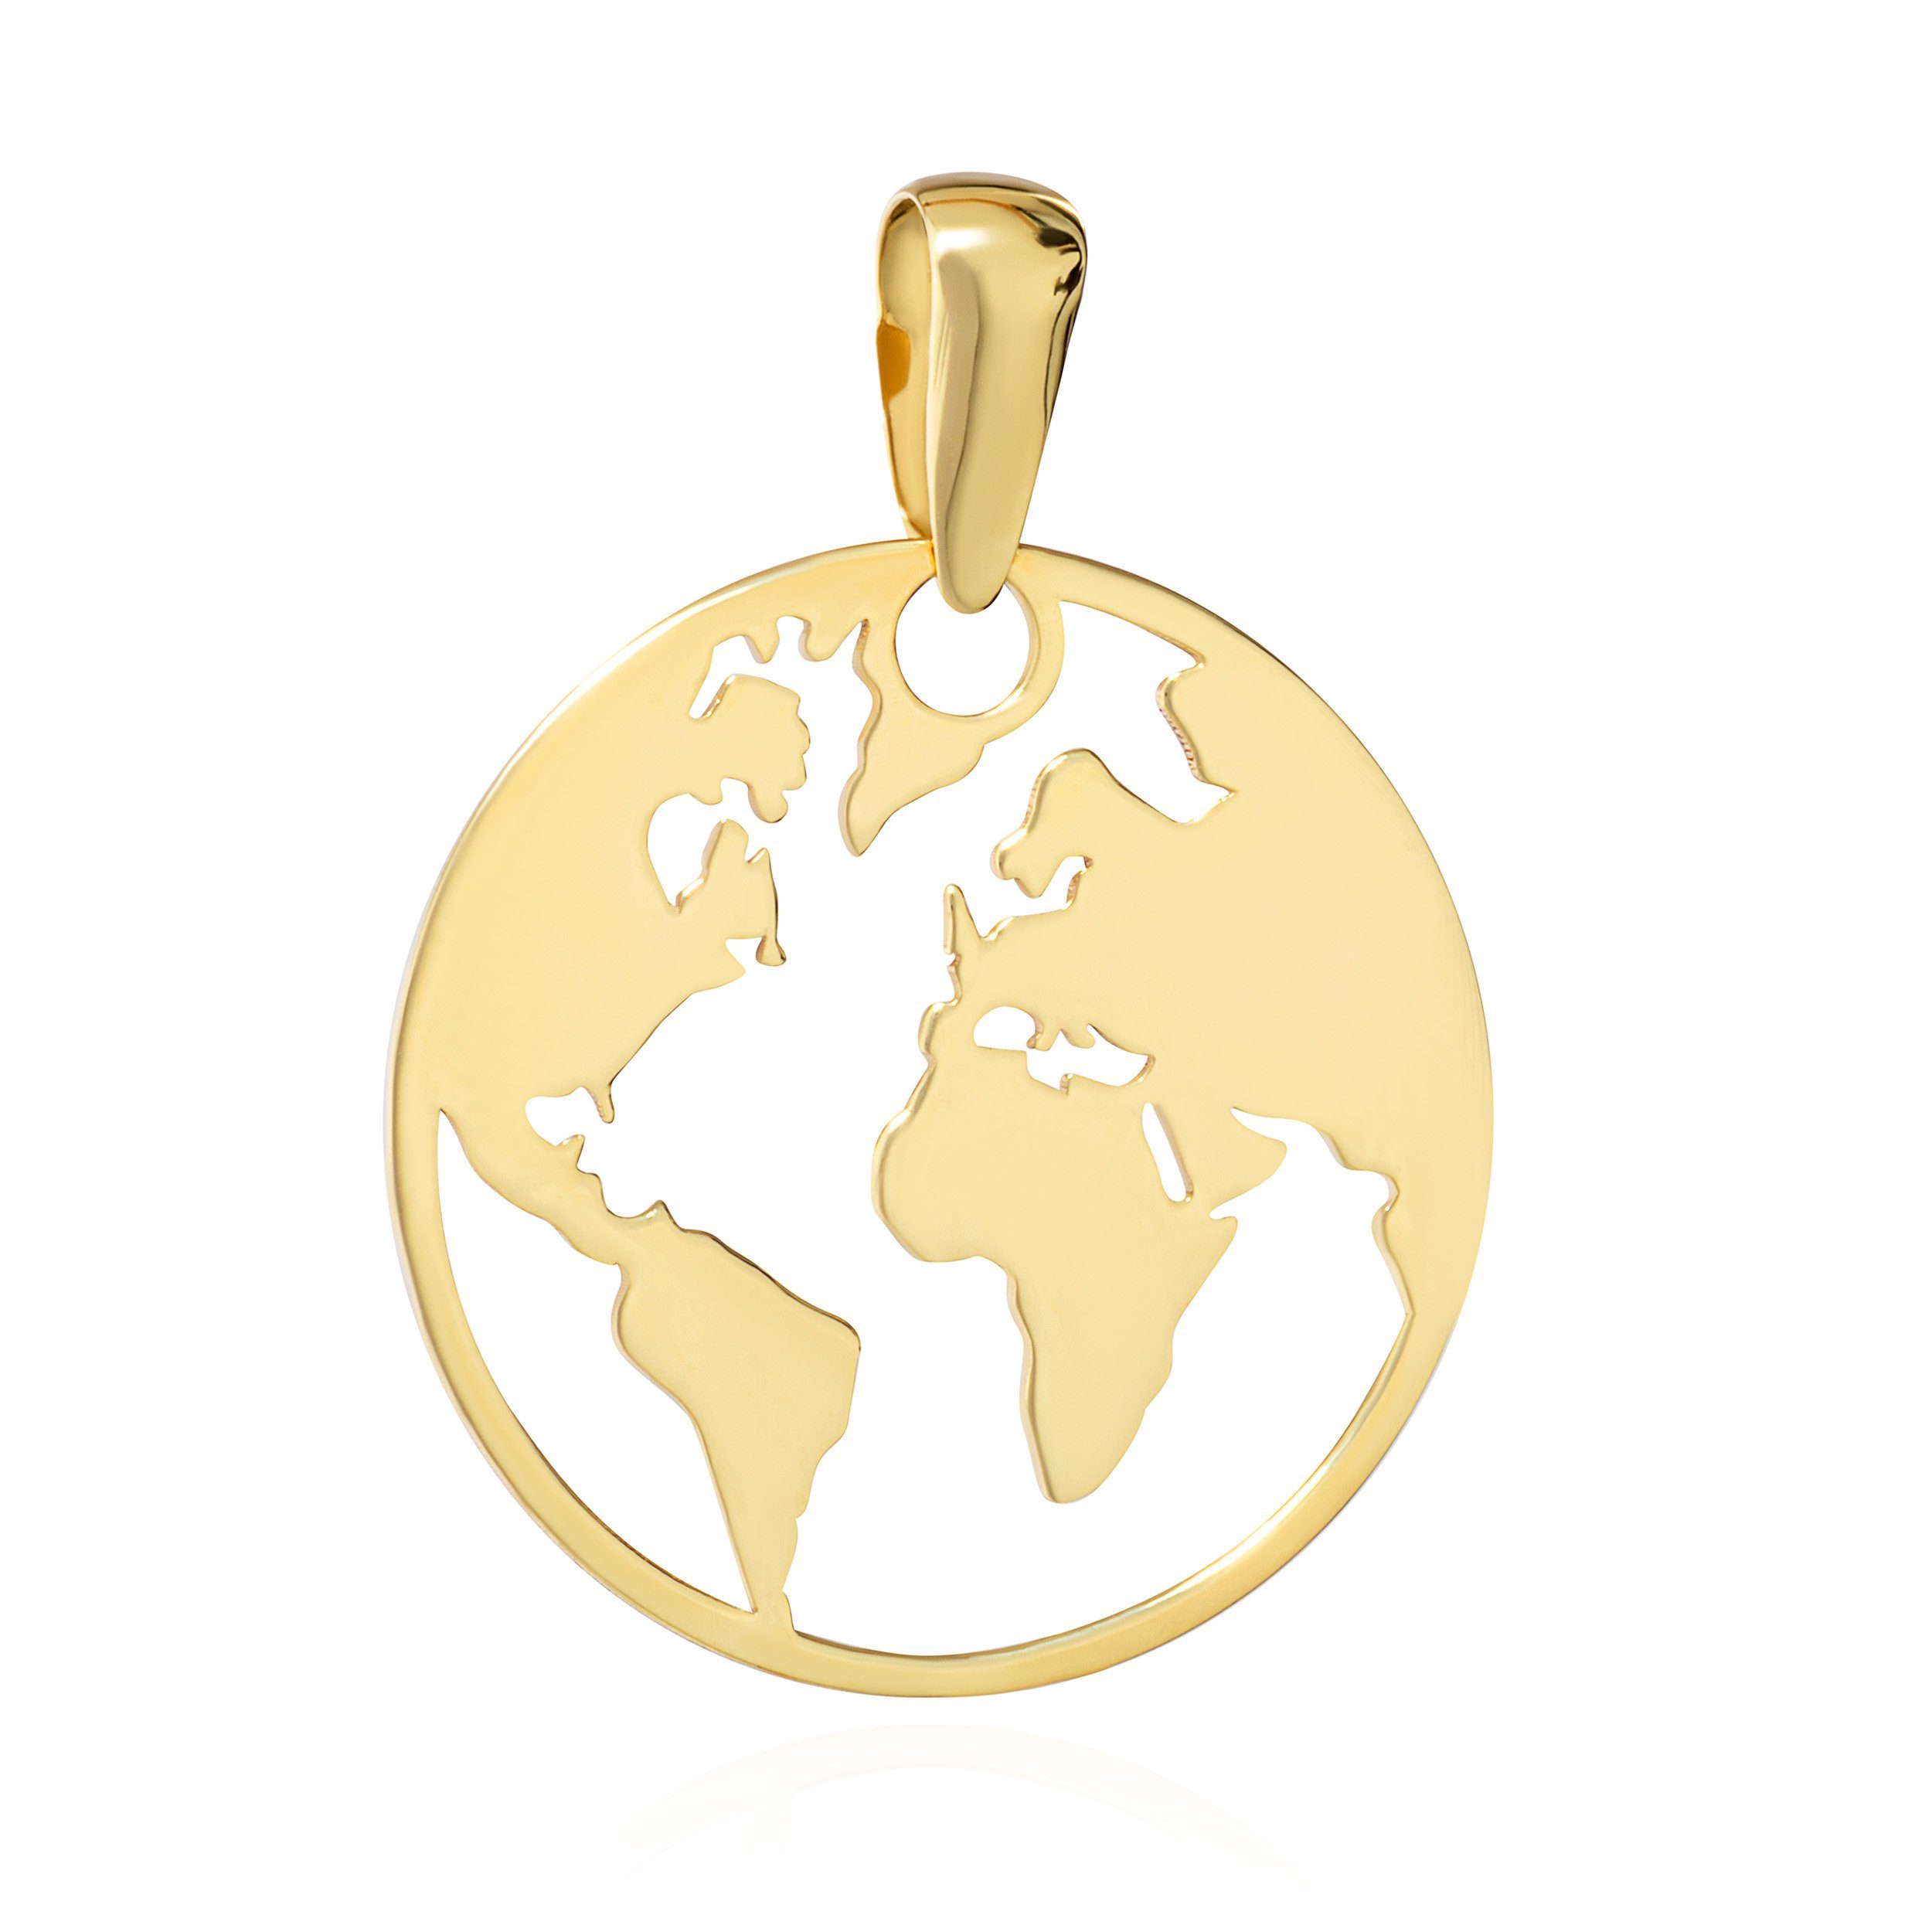 NKlaus Kettenanhänger Kettenanhänger Weltkugel 333 Gelb Gold 8 Karat 16 mm Globus Atlas Welt